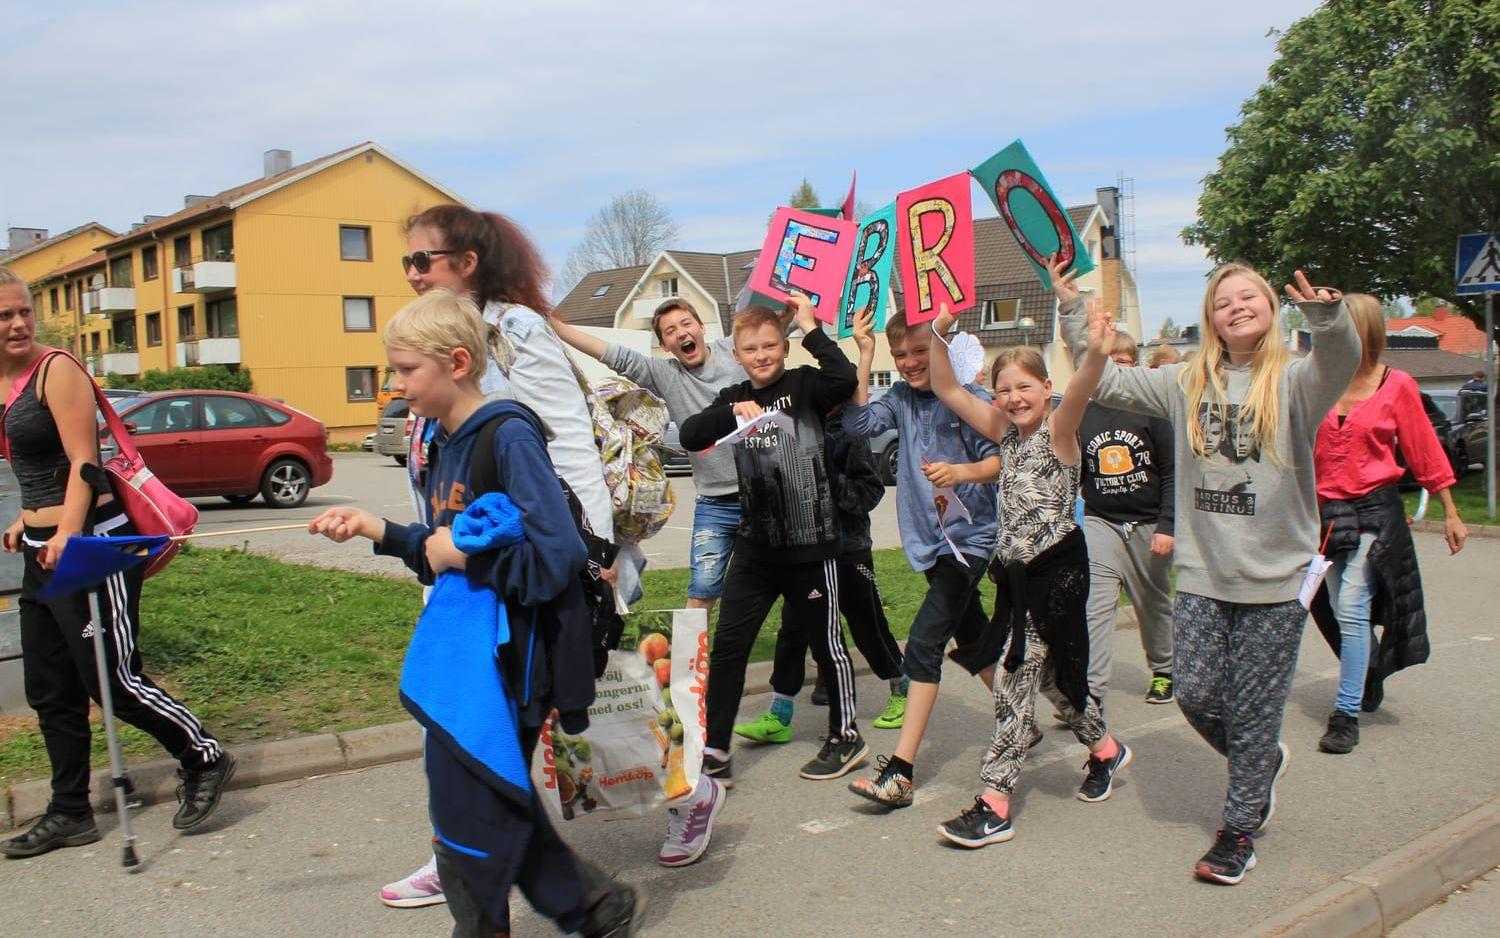 Eleverna var uppspelta och glada och det hade de all anledning att vara, en sådan här högtidsdag. Bild: Sven-Gunnar Svensson